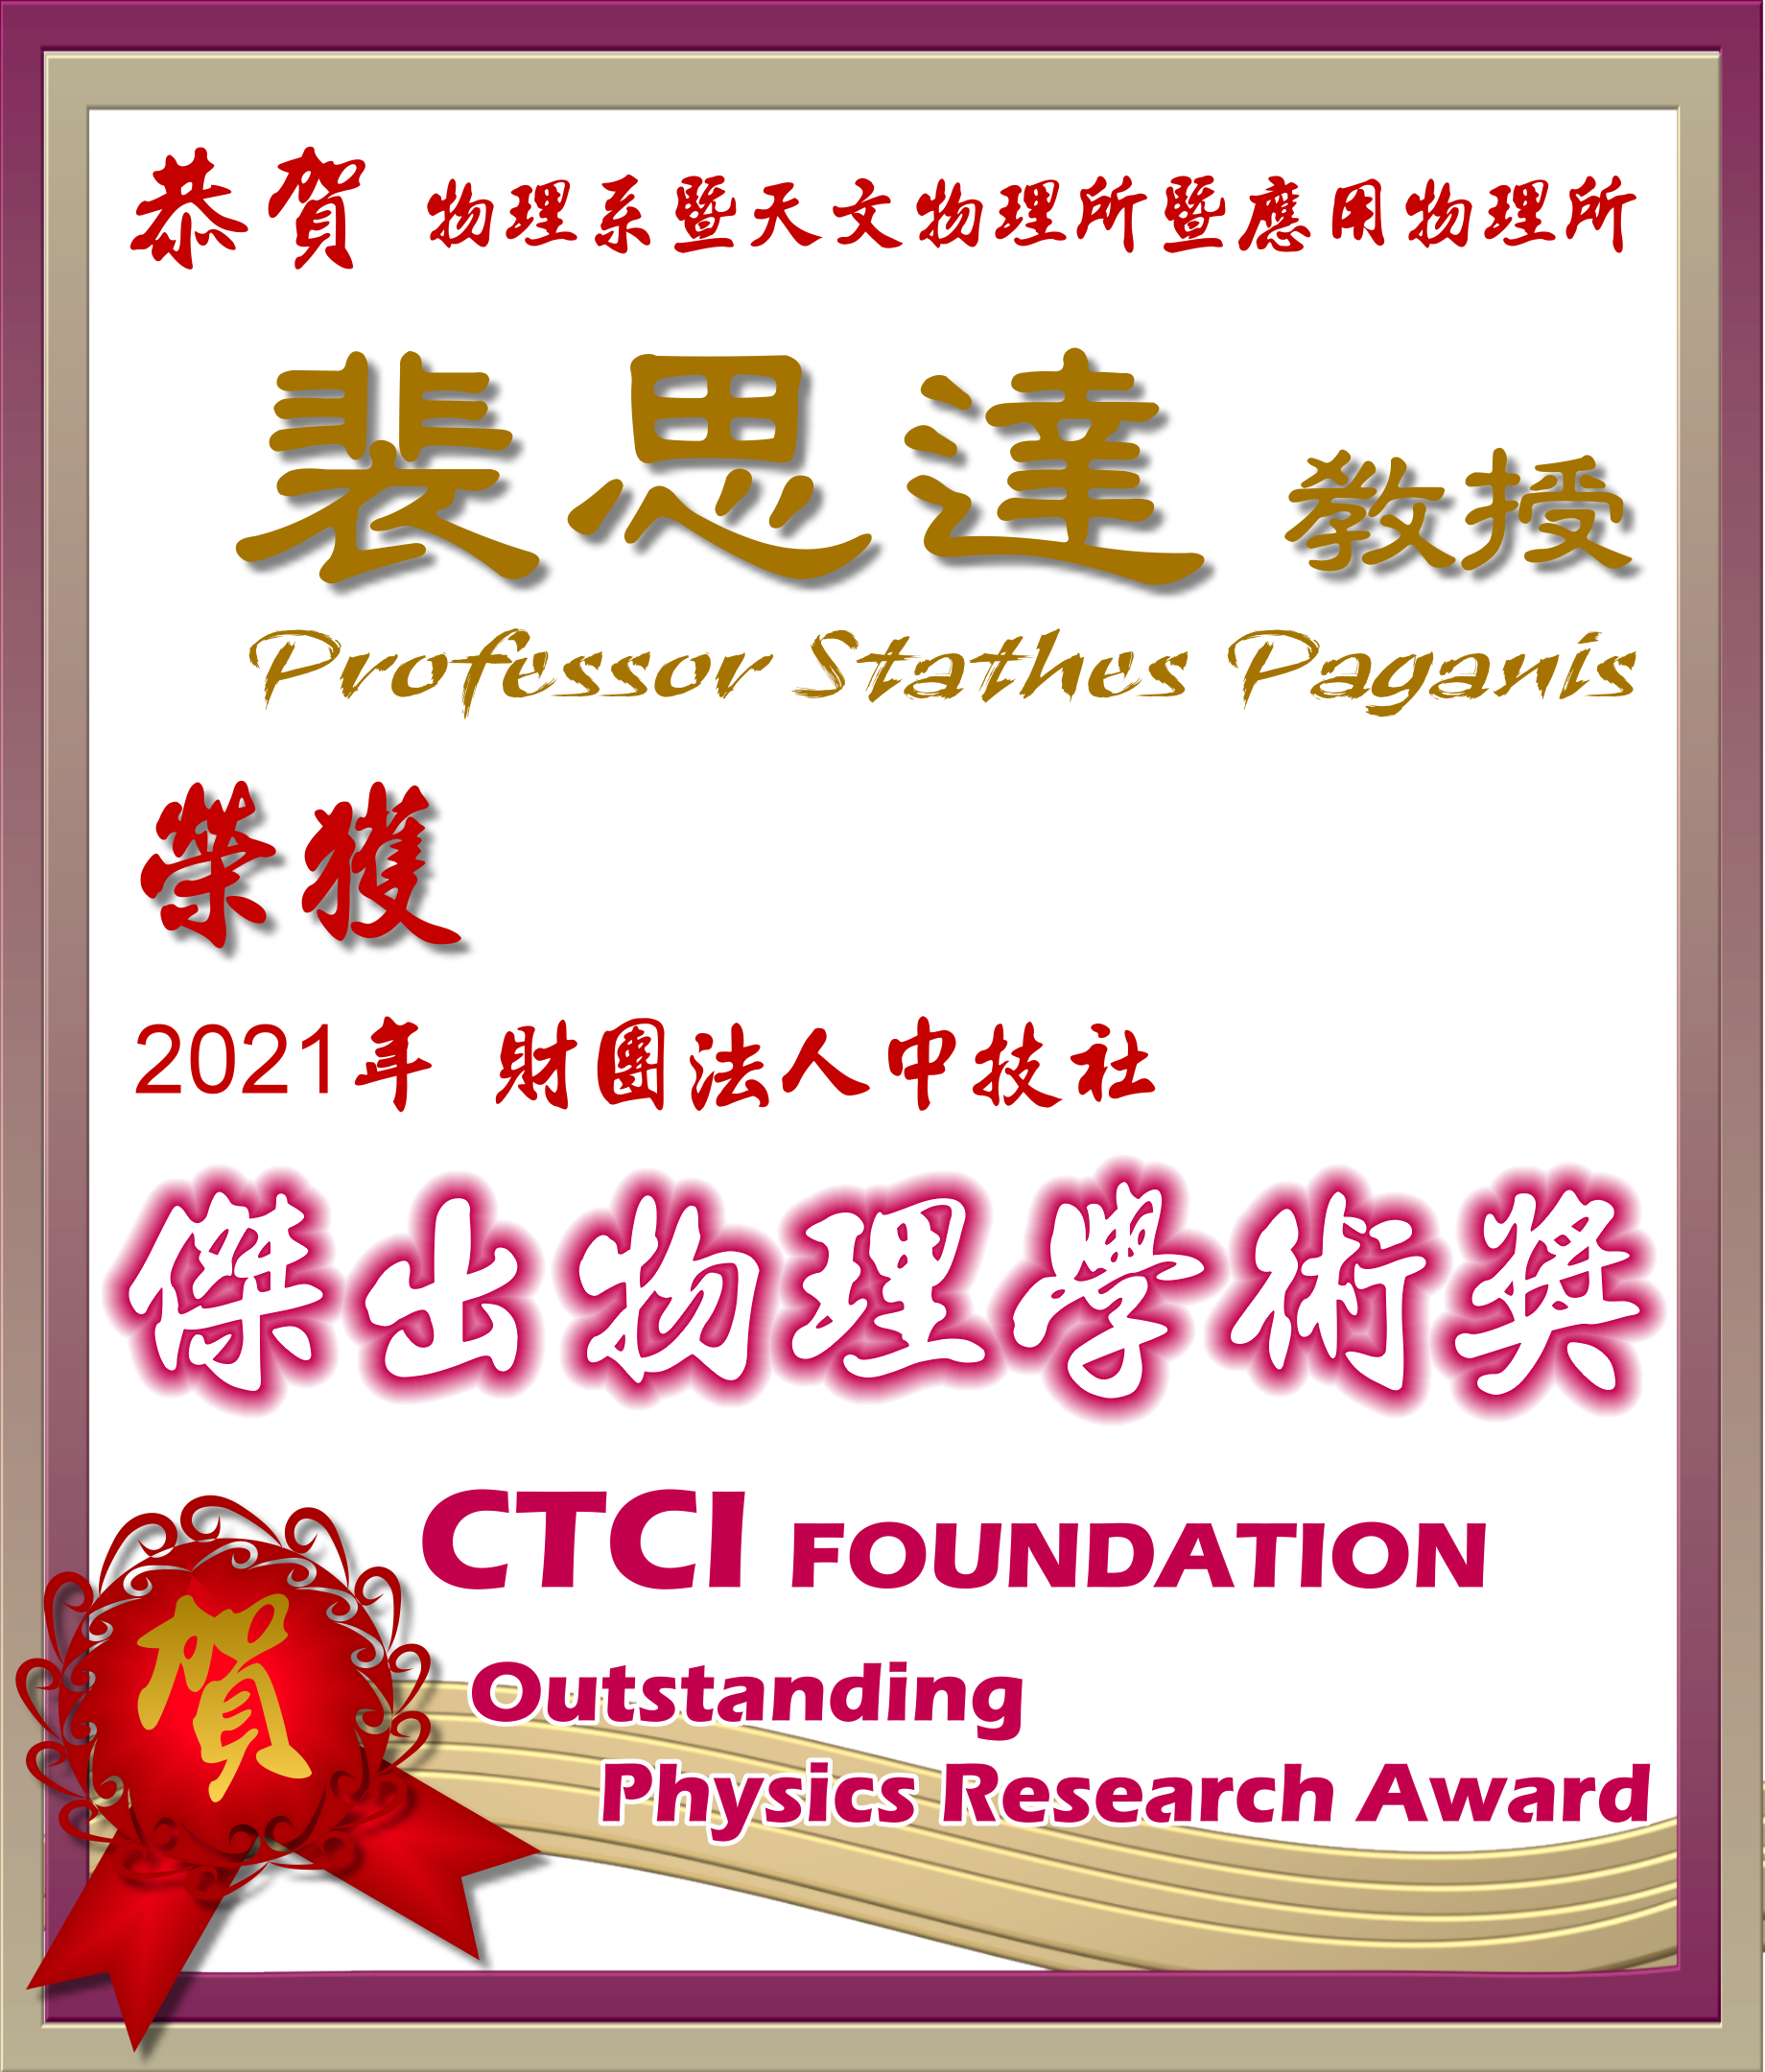 《賀》本系 裴思達 教授 Prof. Stathes Paganis 榮獲 2021年 《財團法人中技社 傑出物理學術獎》 (CTCI Outstanding Physics Research Award)